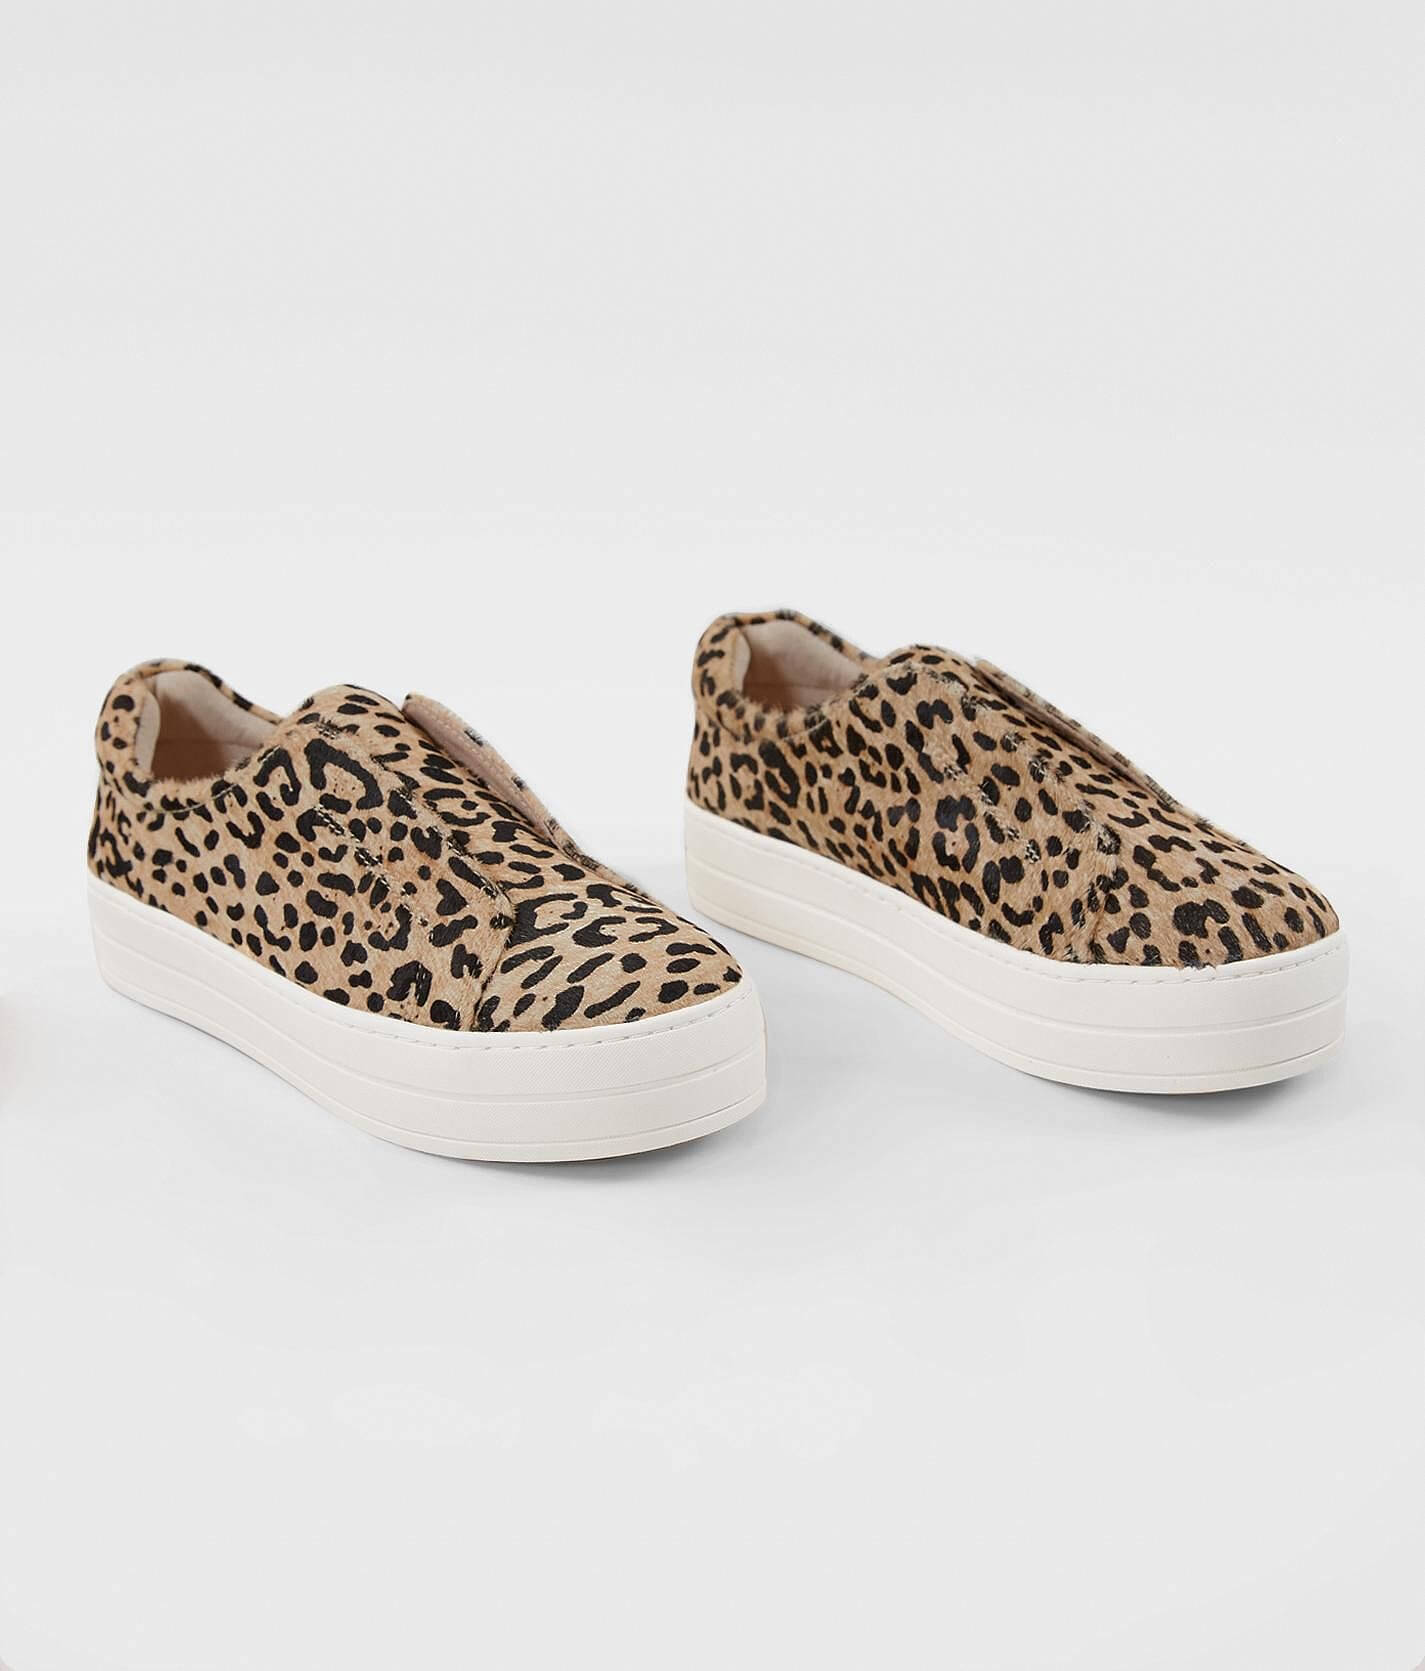 J/Slides Leopard On Leather Sneaker - Women's Shoes in Beige Black | Buckle